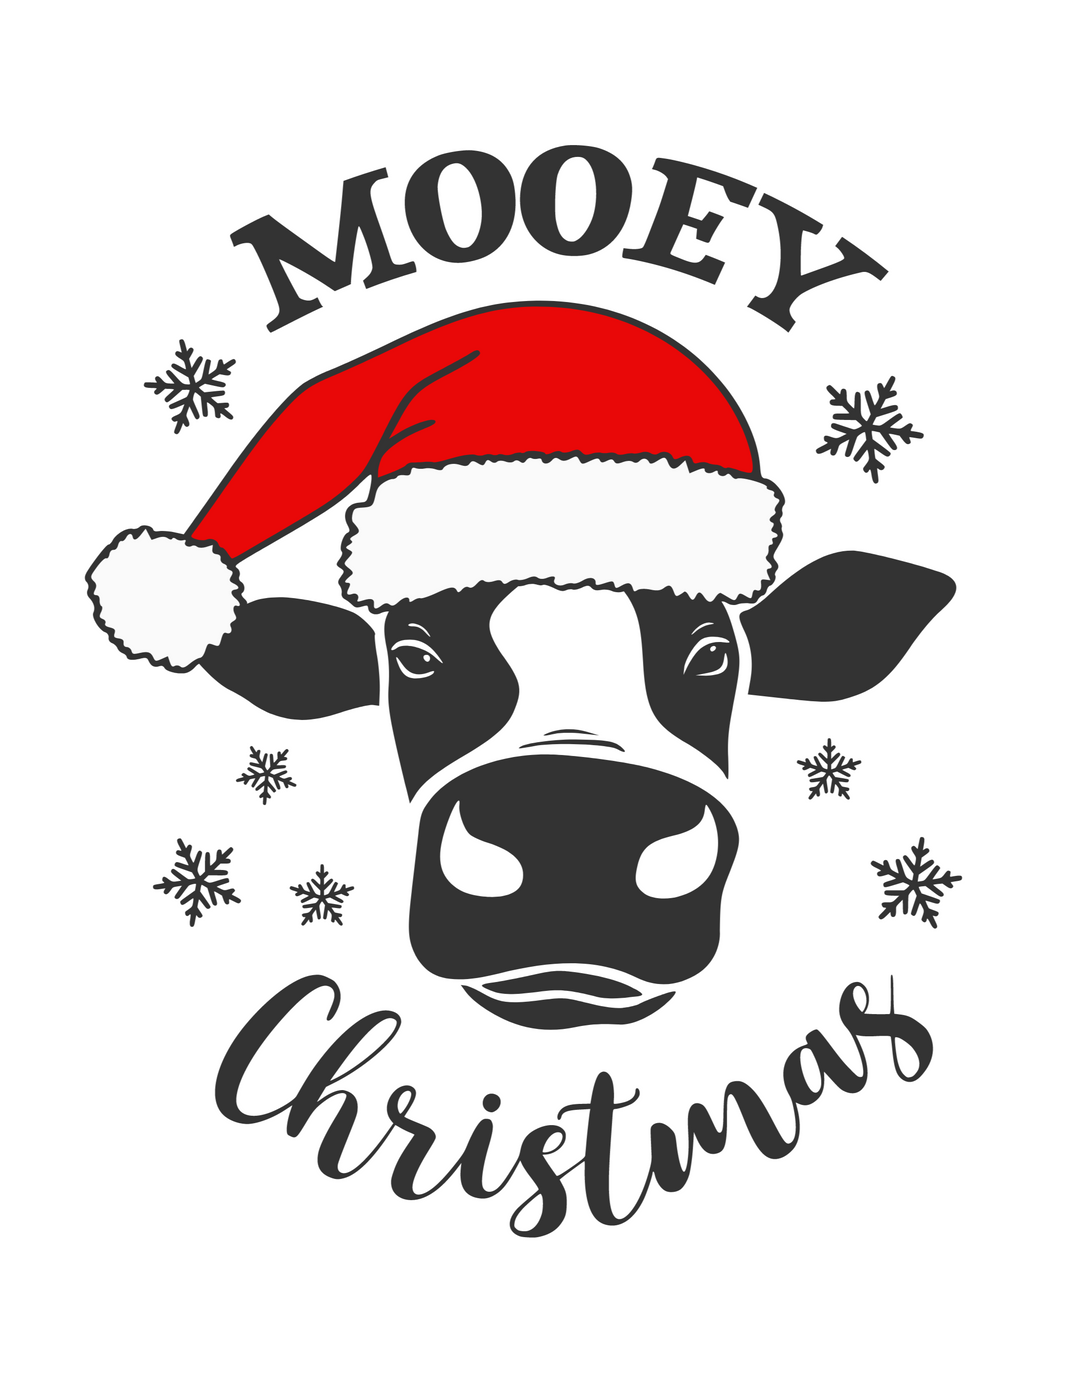 Mooey Christmas Hoodie 48059567296382697372 44 Hoodie Worlds Worst Tees